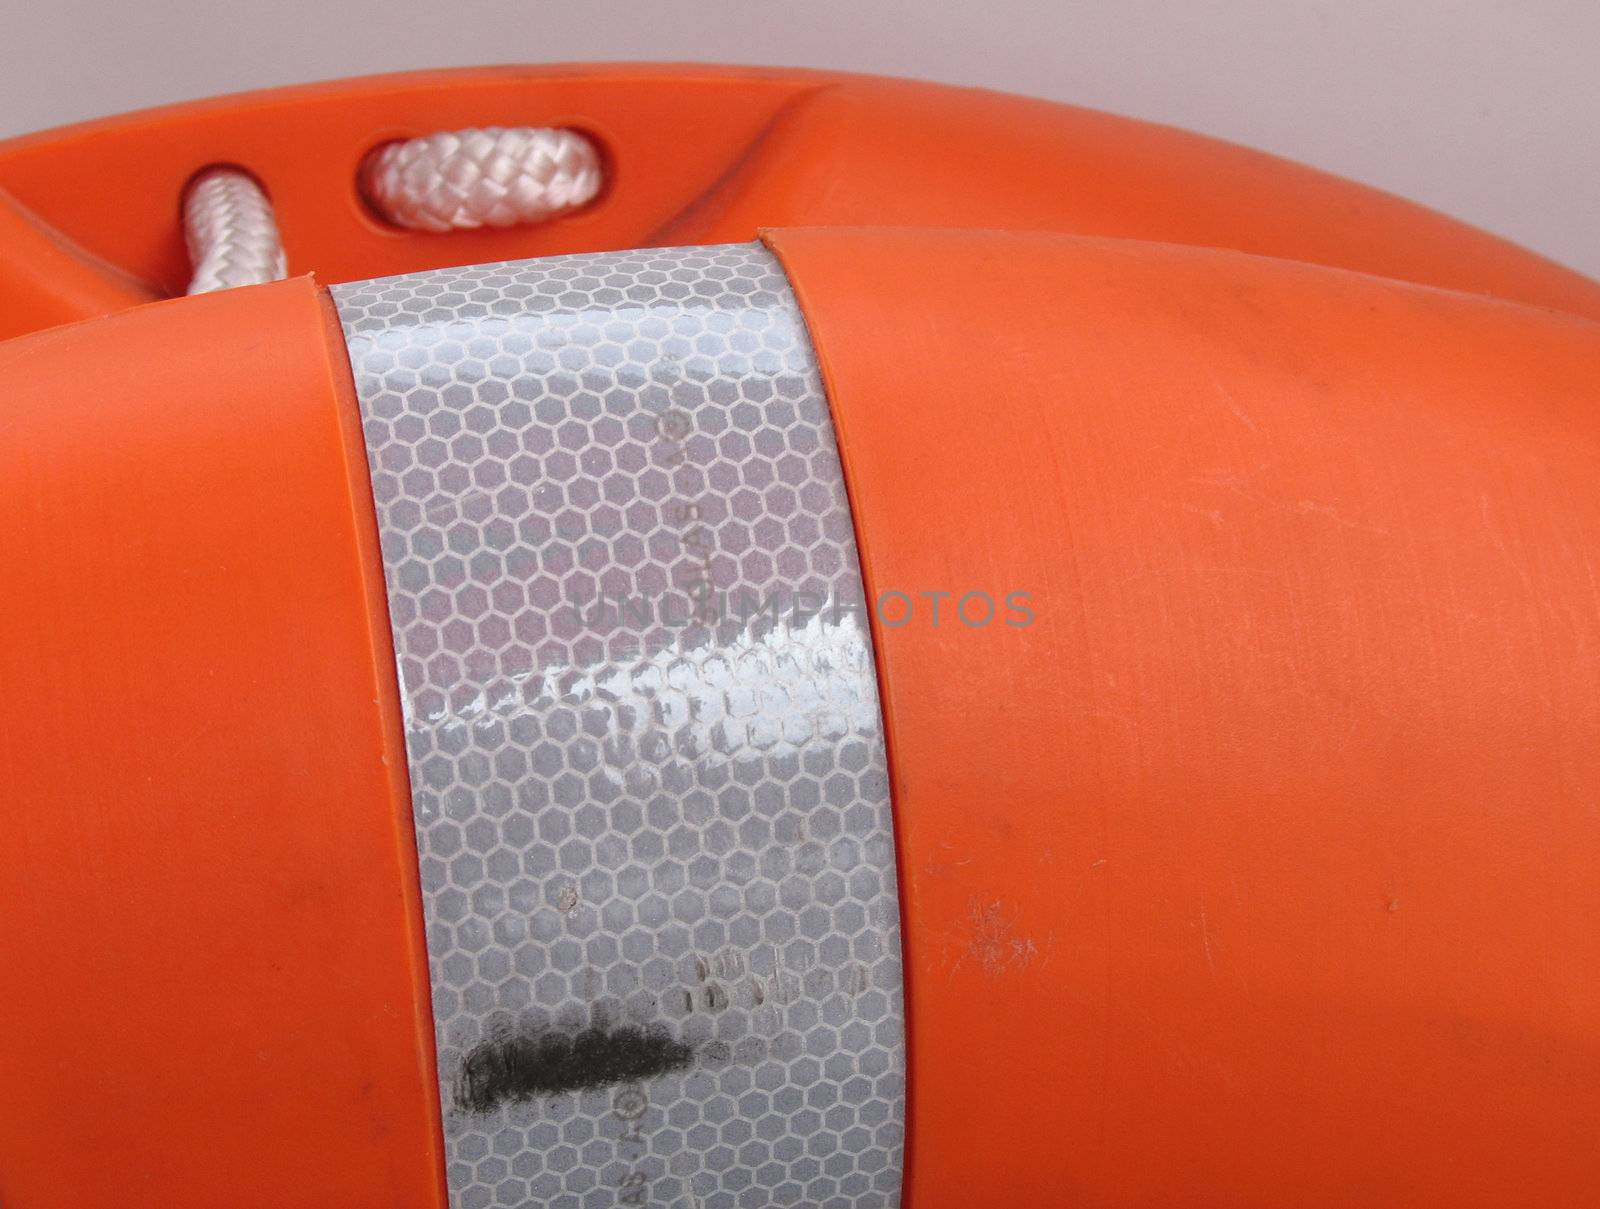 orange buoy close up